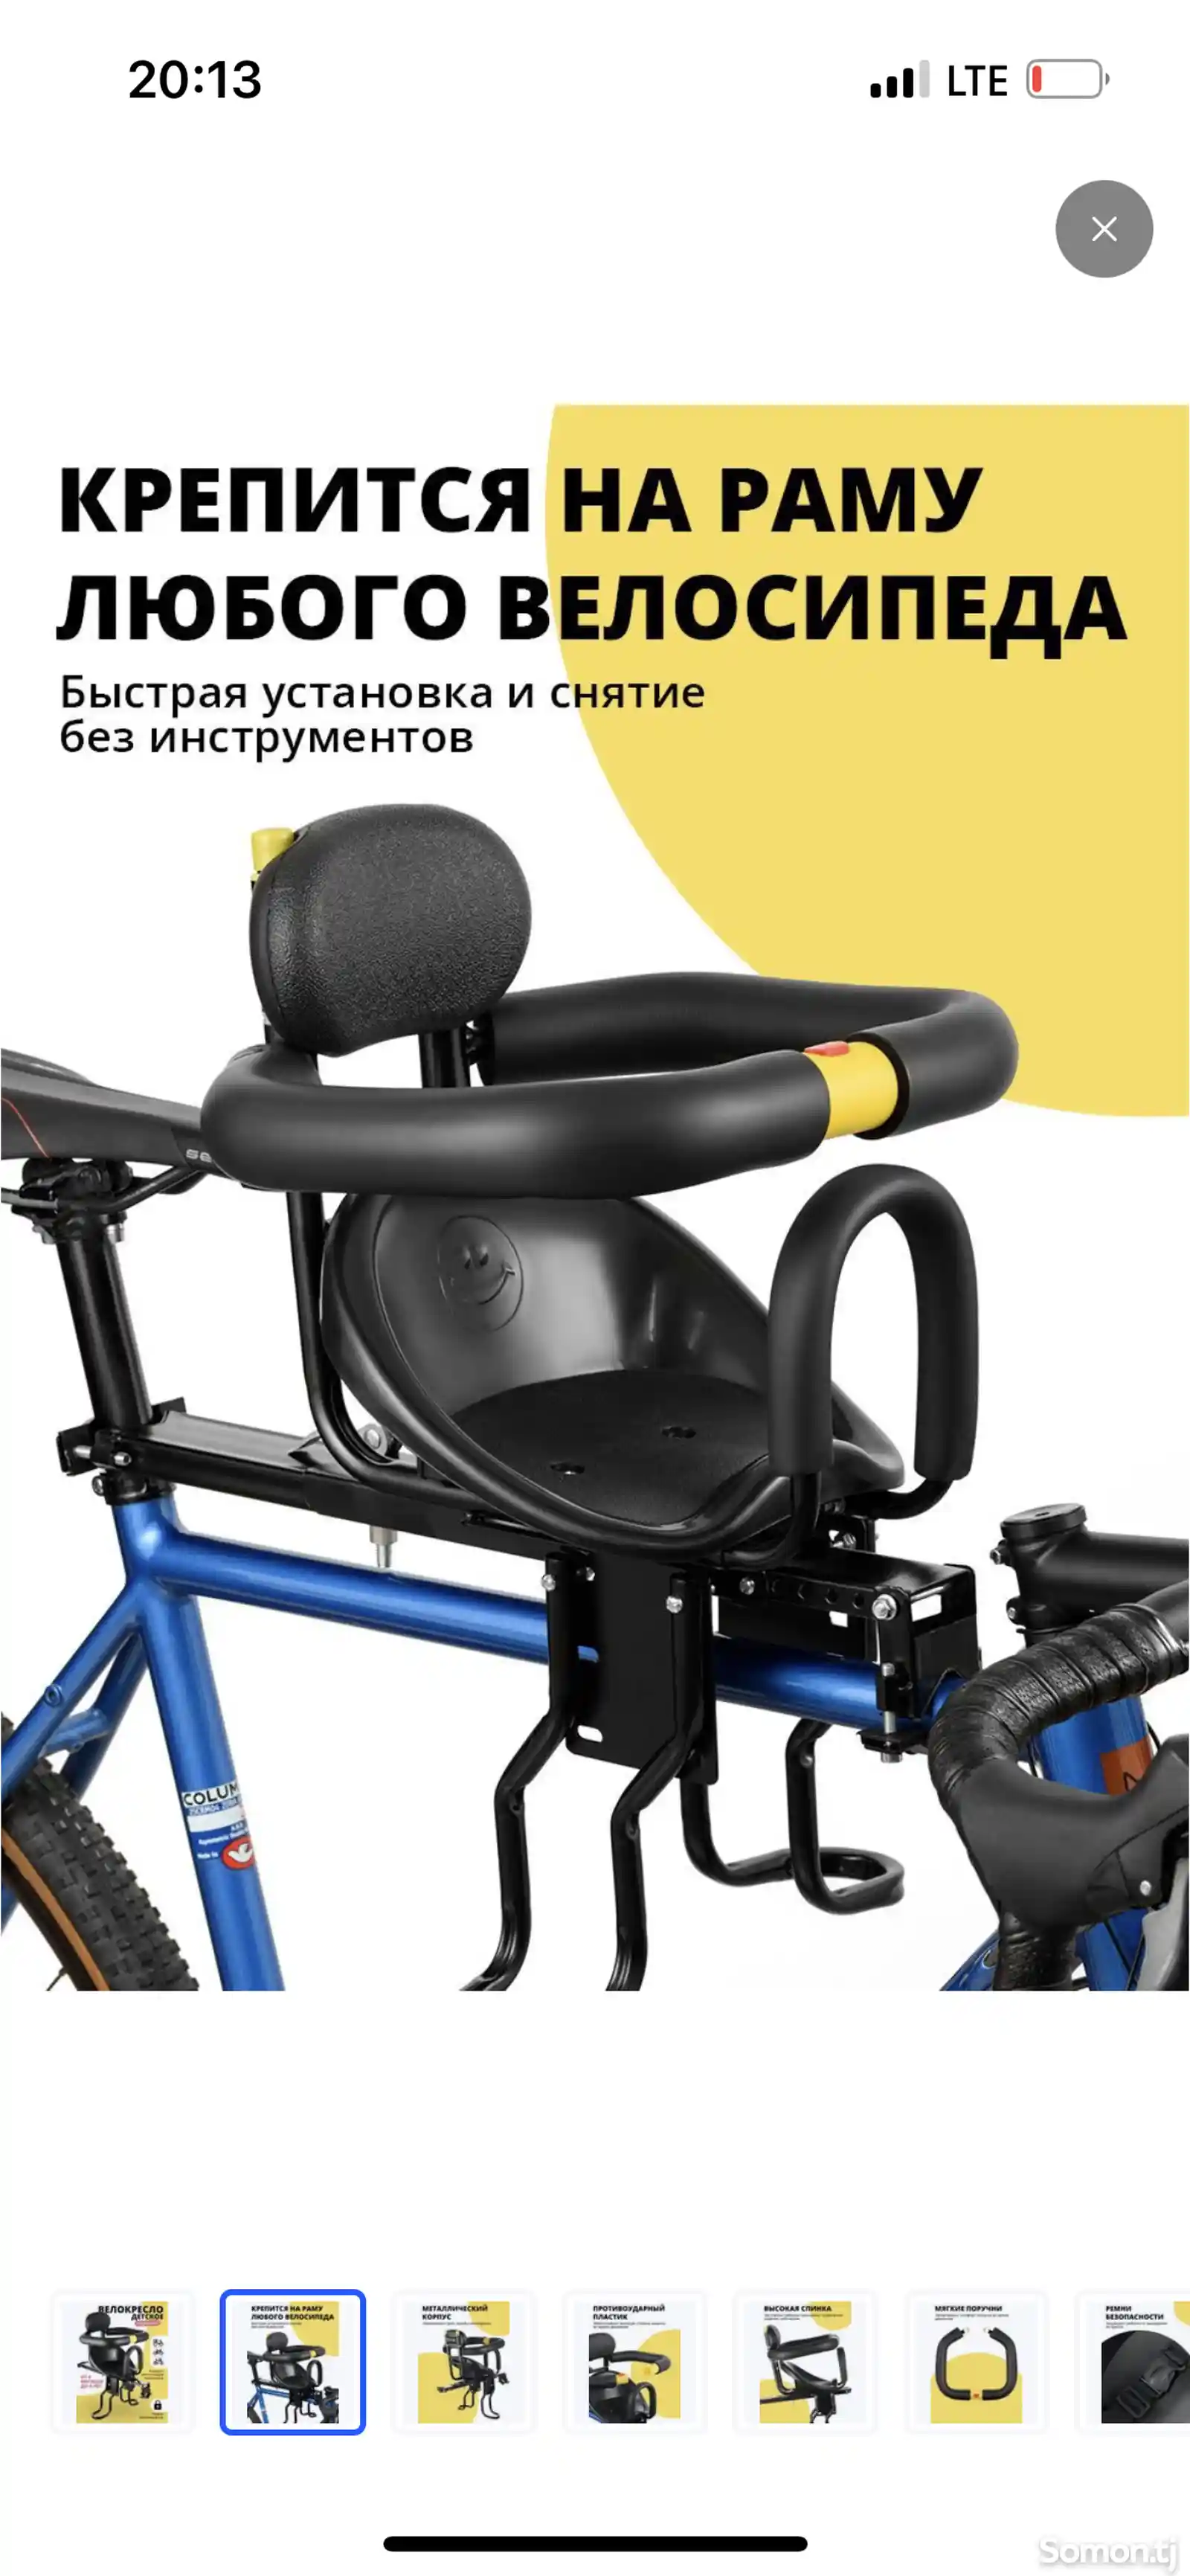 Детская кресло для велосипеда-2